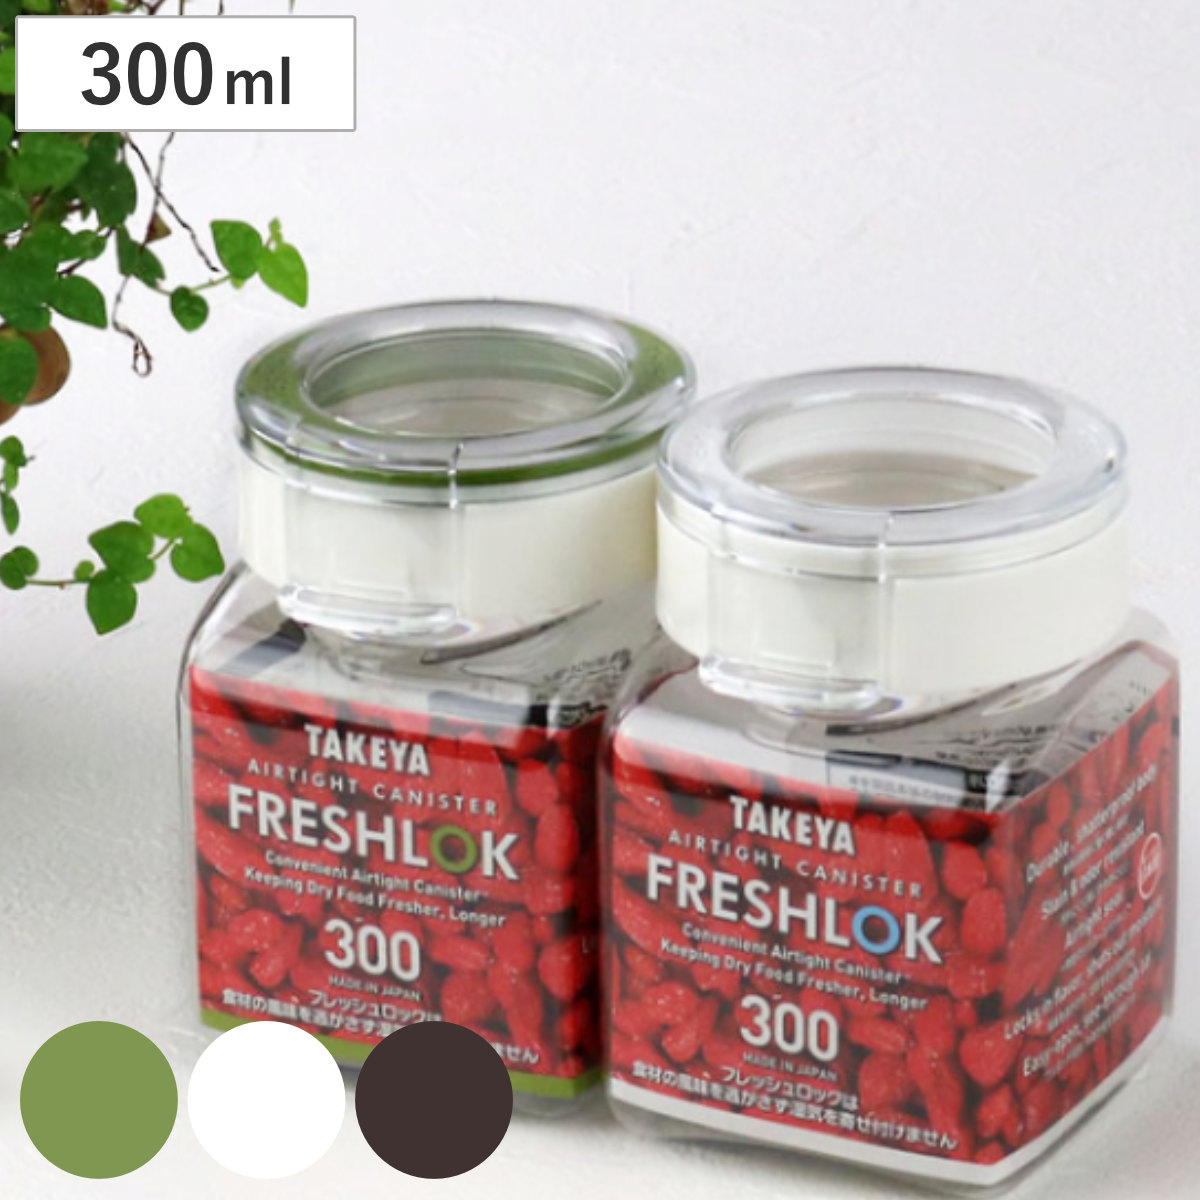 保存容器 300ml フレッシュロック 角型 選べるカラー 白 緑 茶